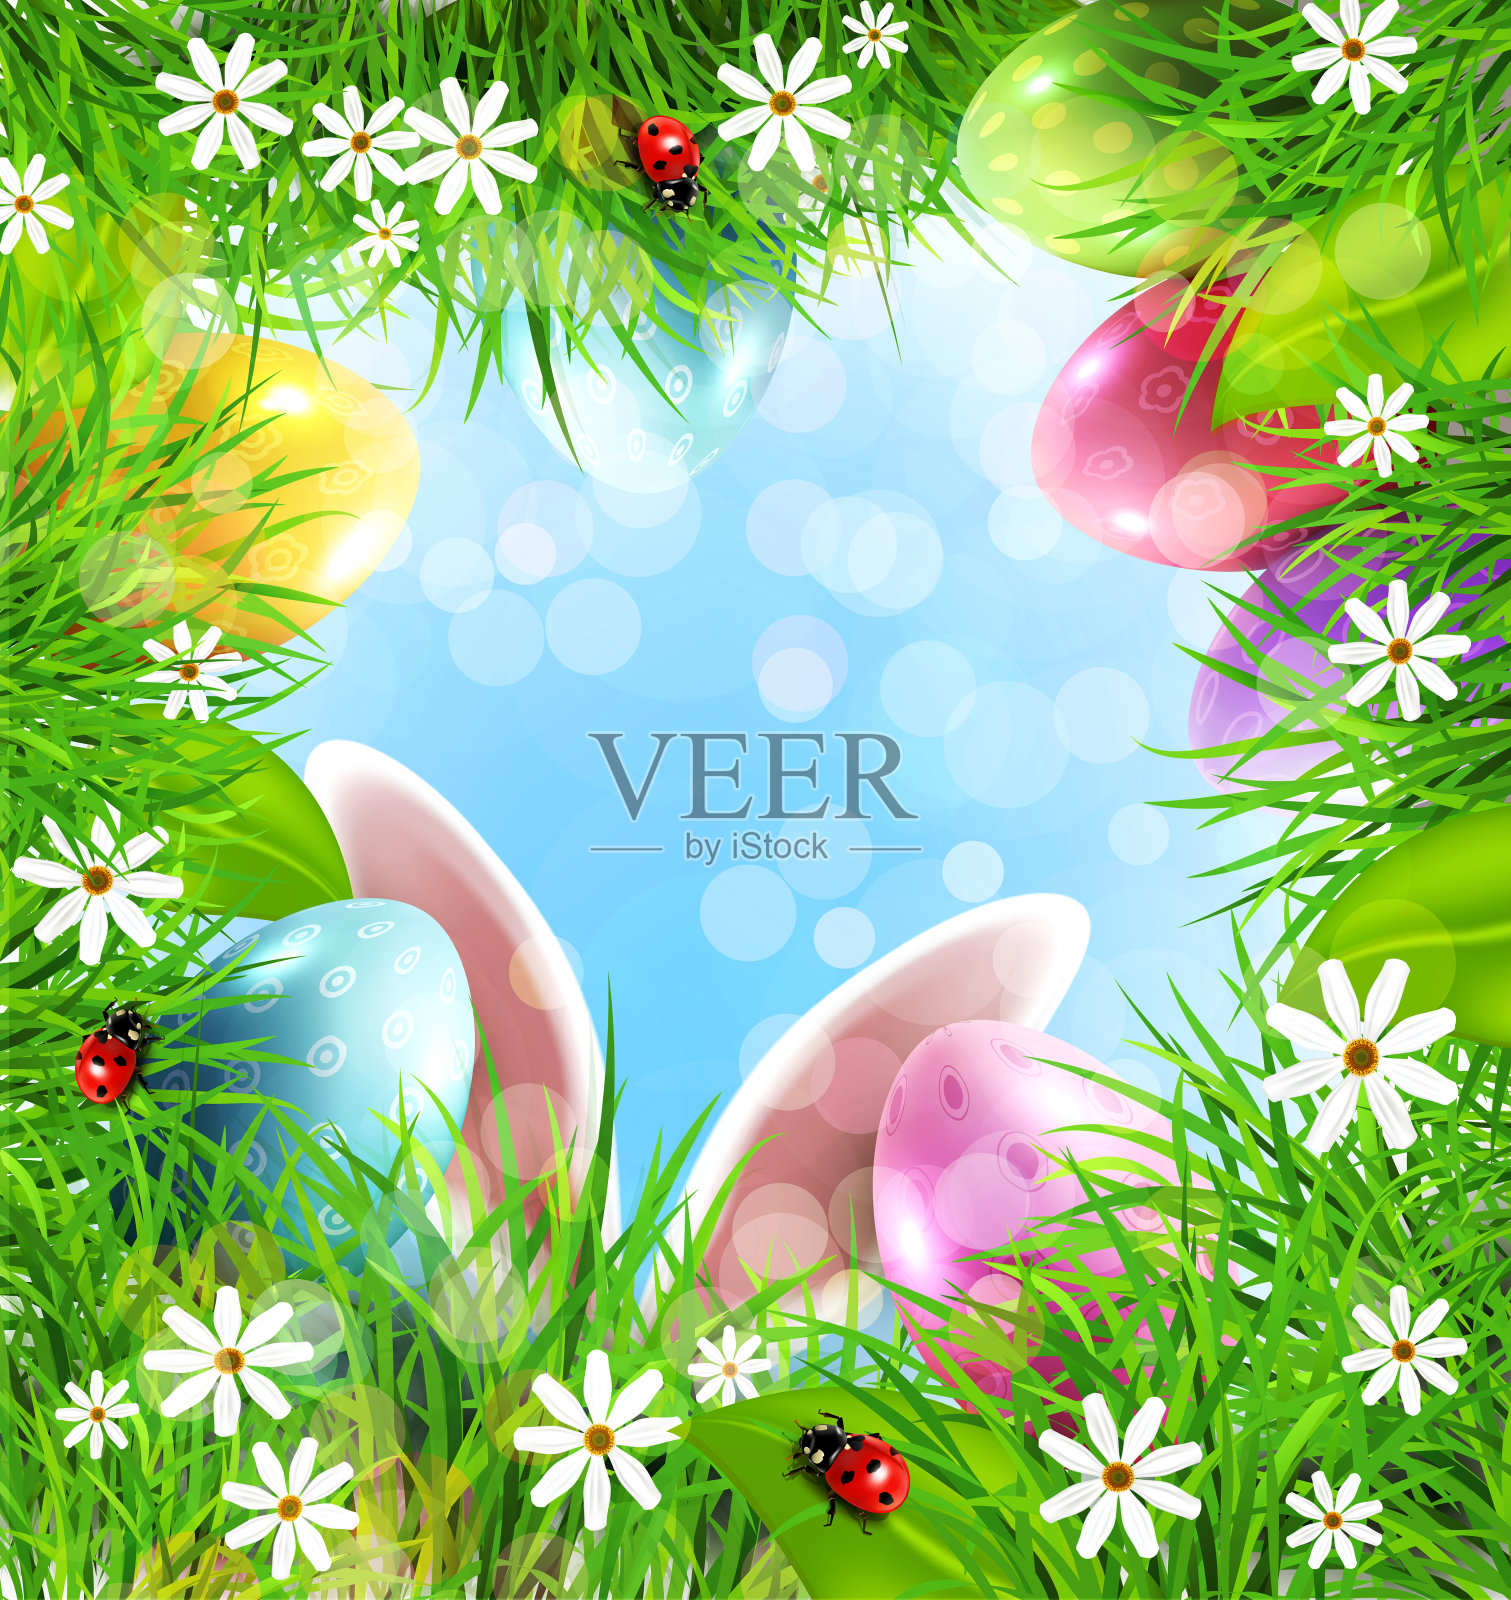 复活节背景有兔子耳朵、鸡蛋、草和蓝天。插画图片素材